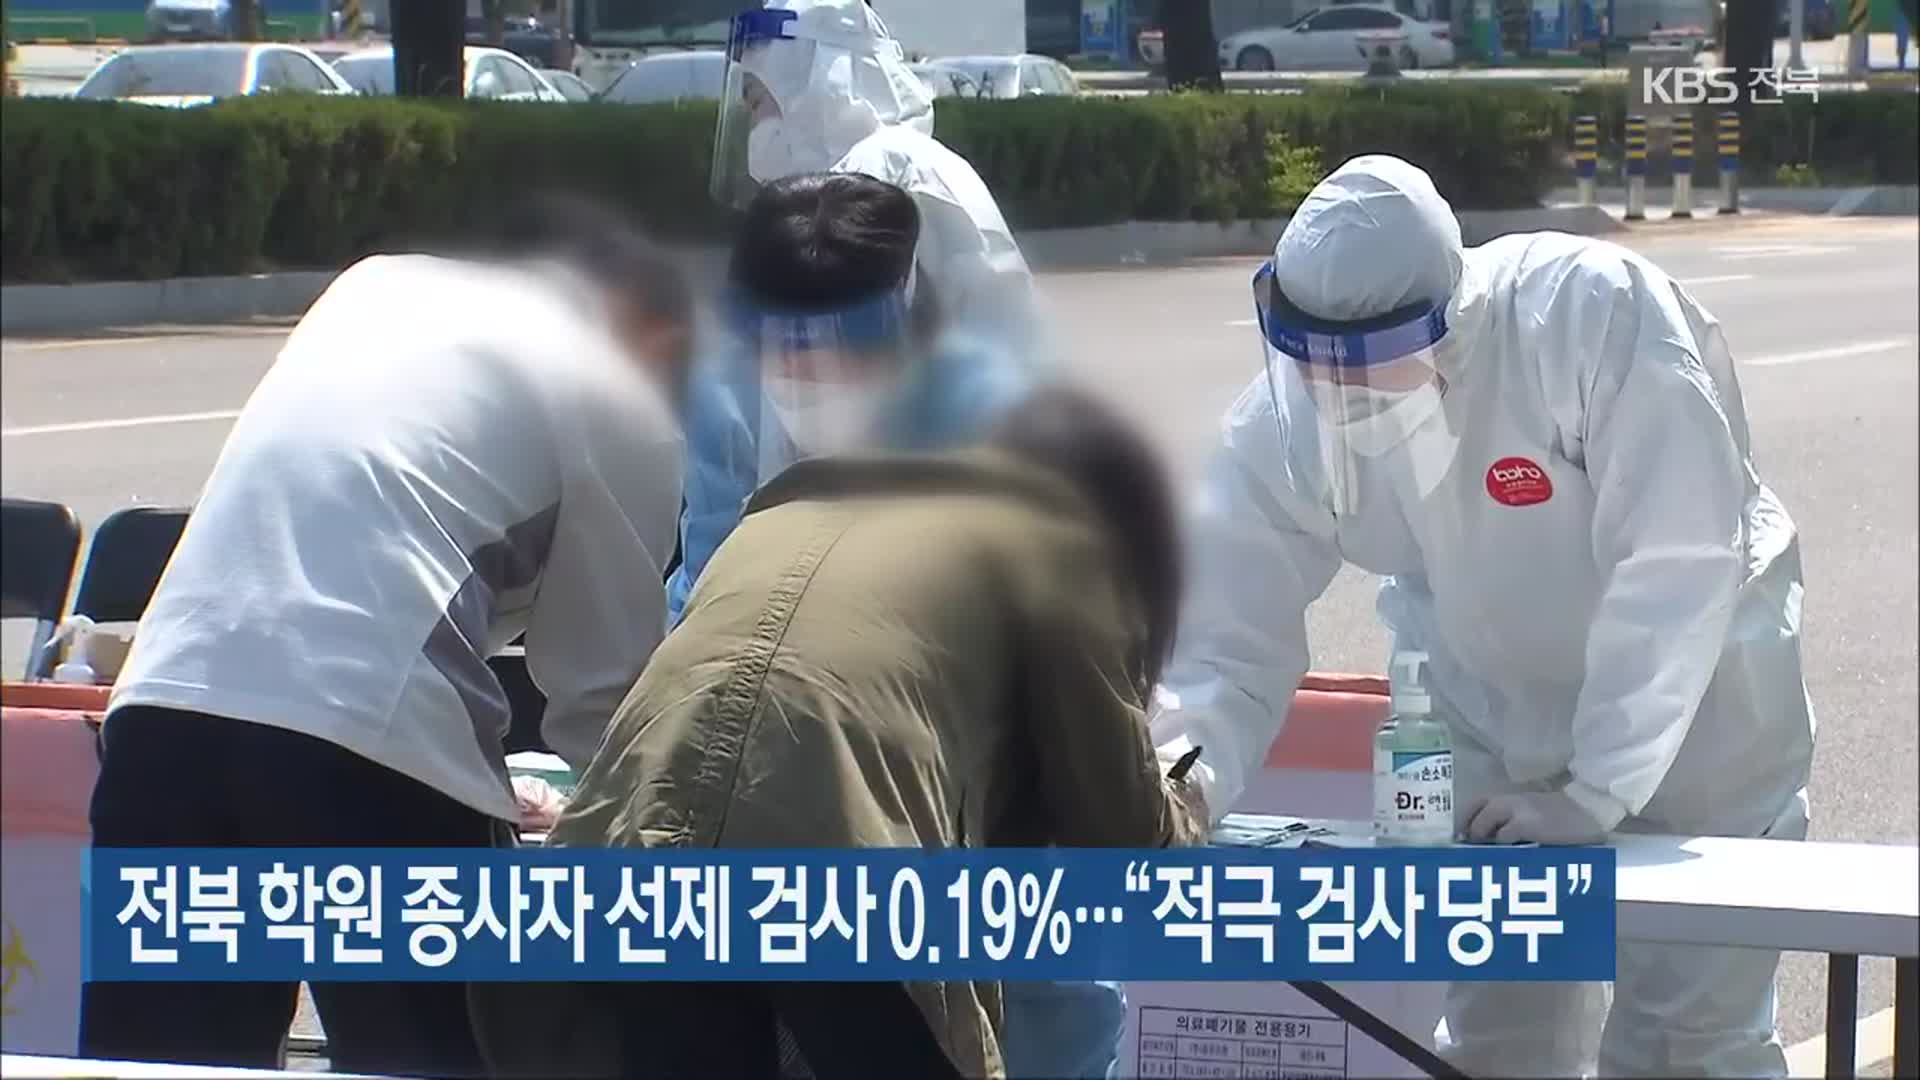 전북 학원 종사자 선제 검사 0.19%…“적극 검사 당부”